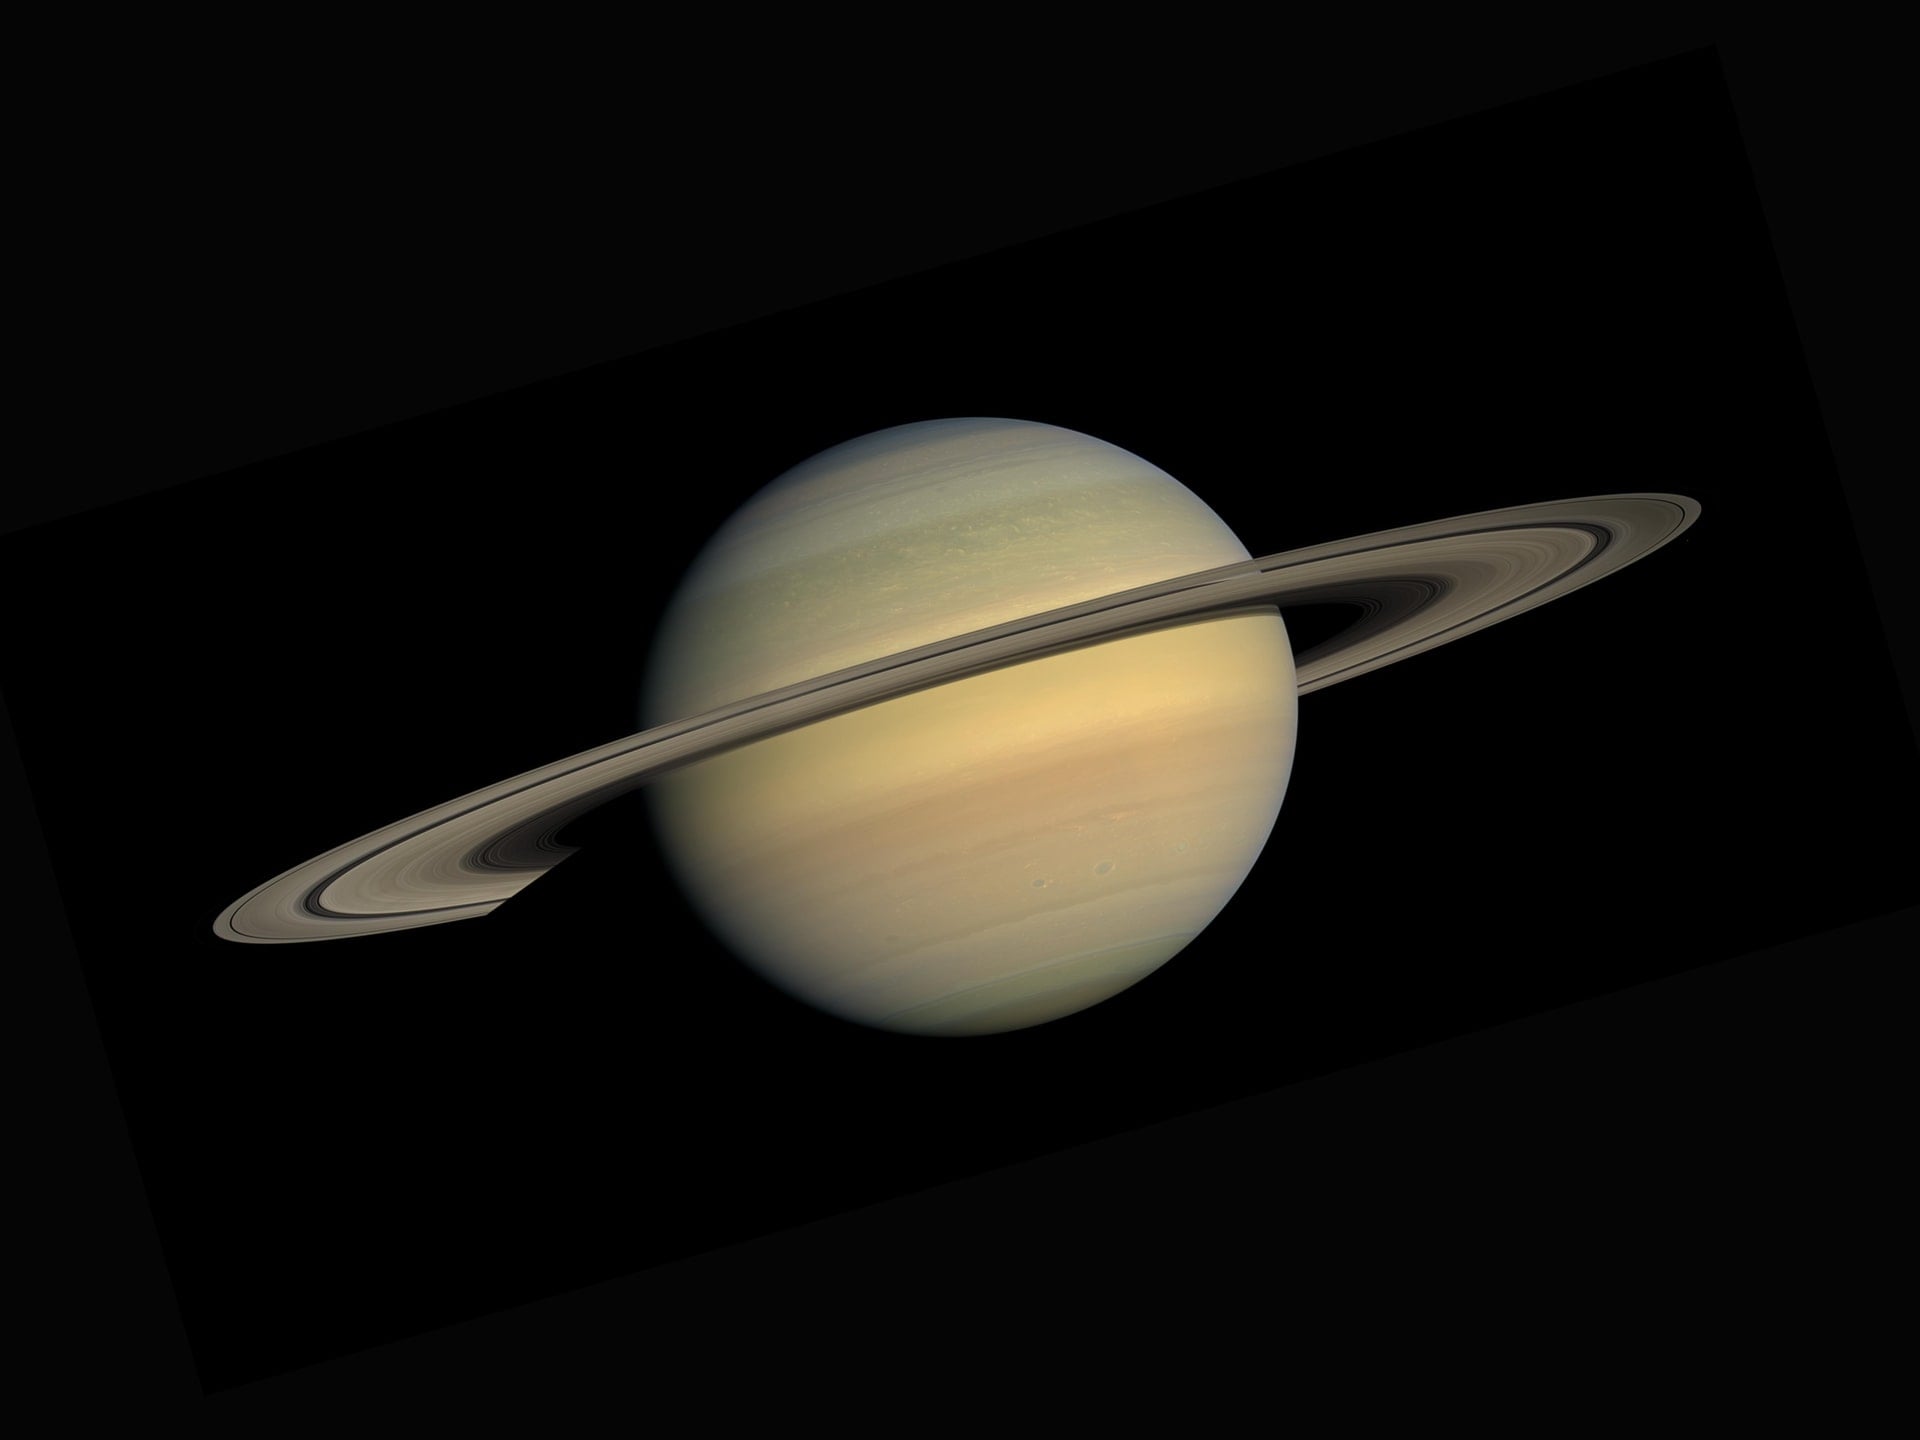 https://astrolojihan.com/wp-content/uploads/2021/12/Saturn.jpg